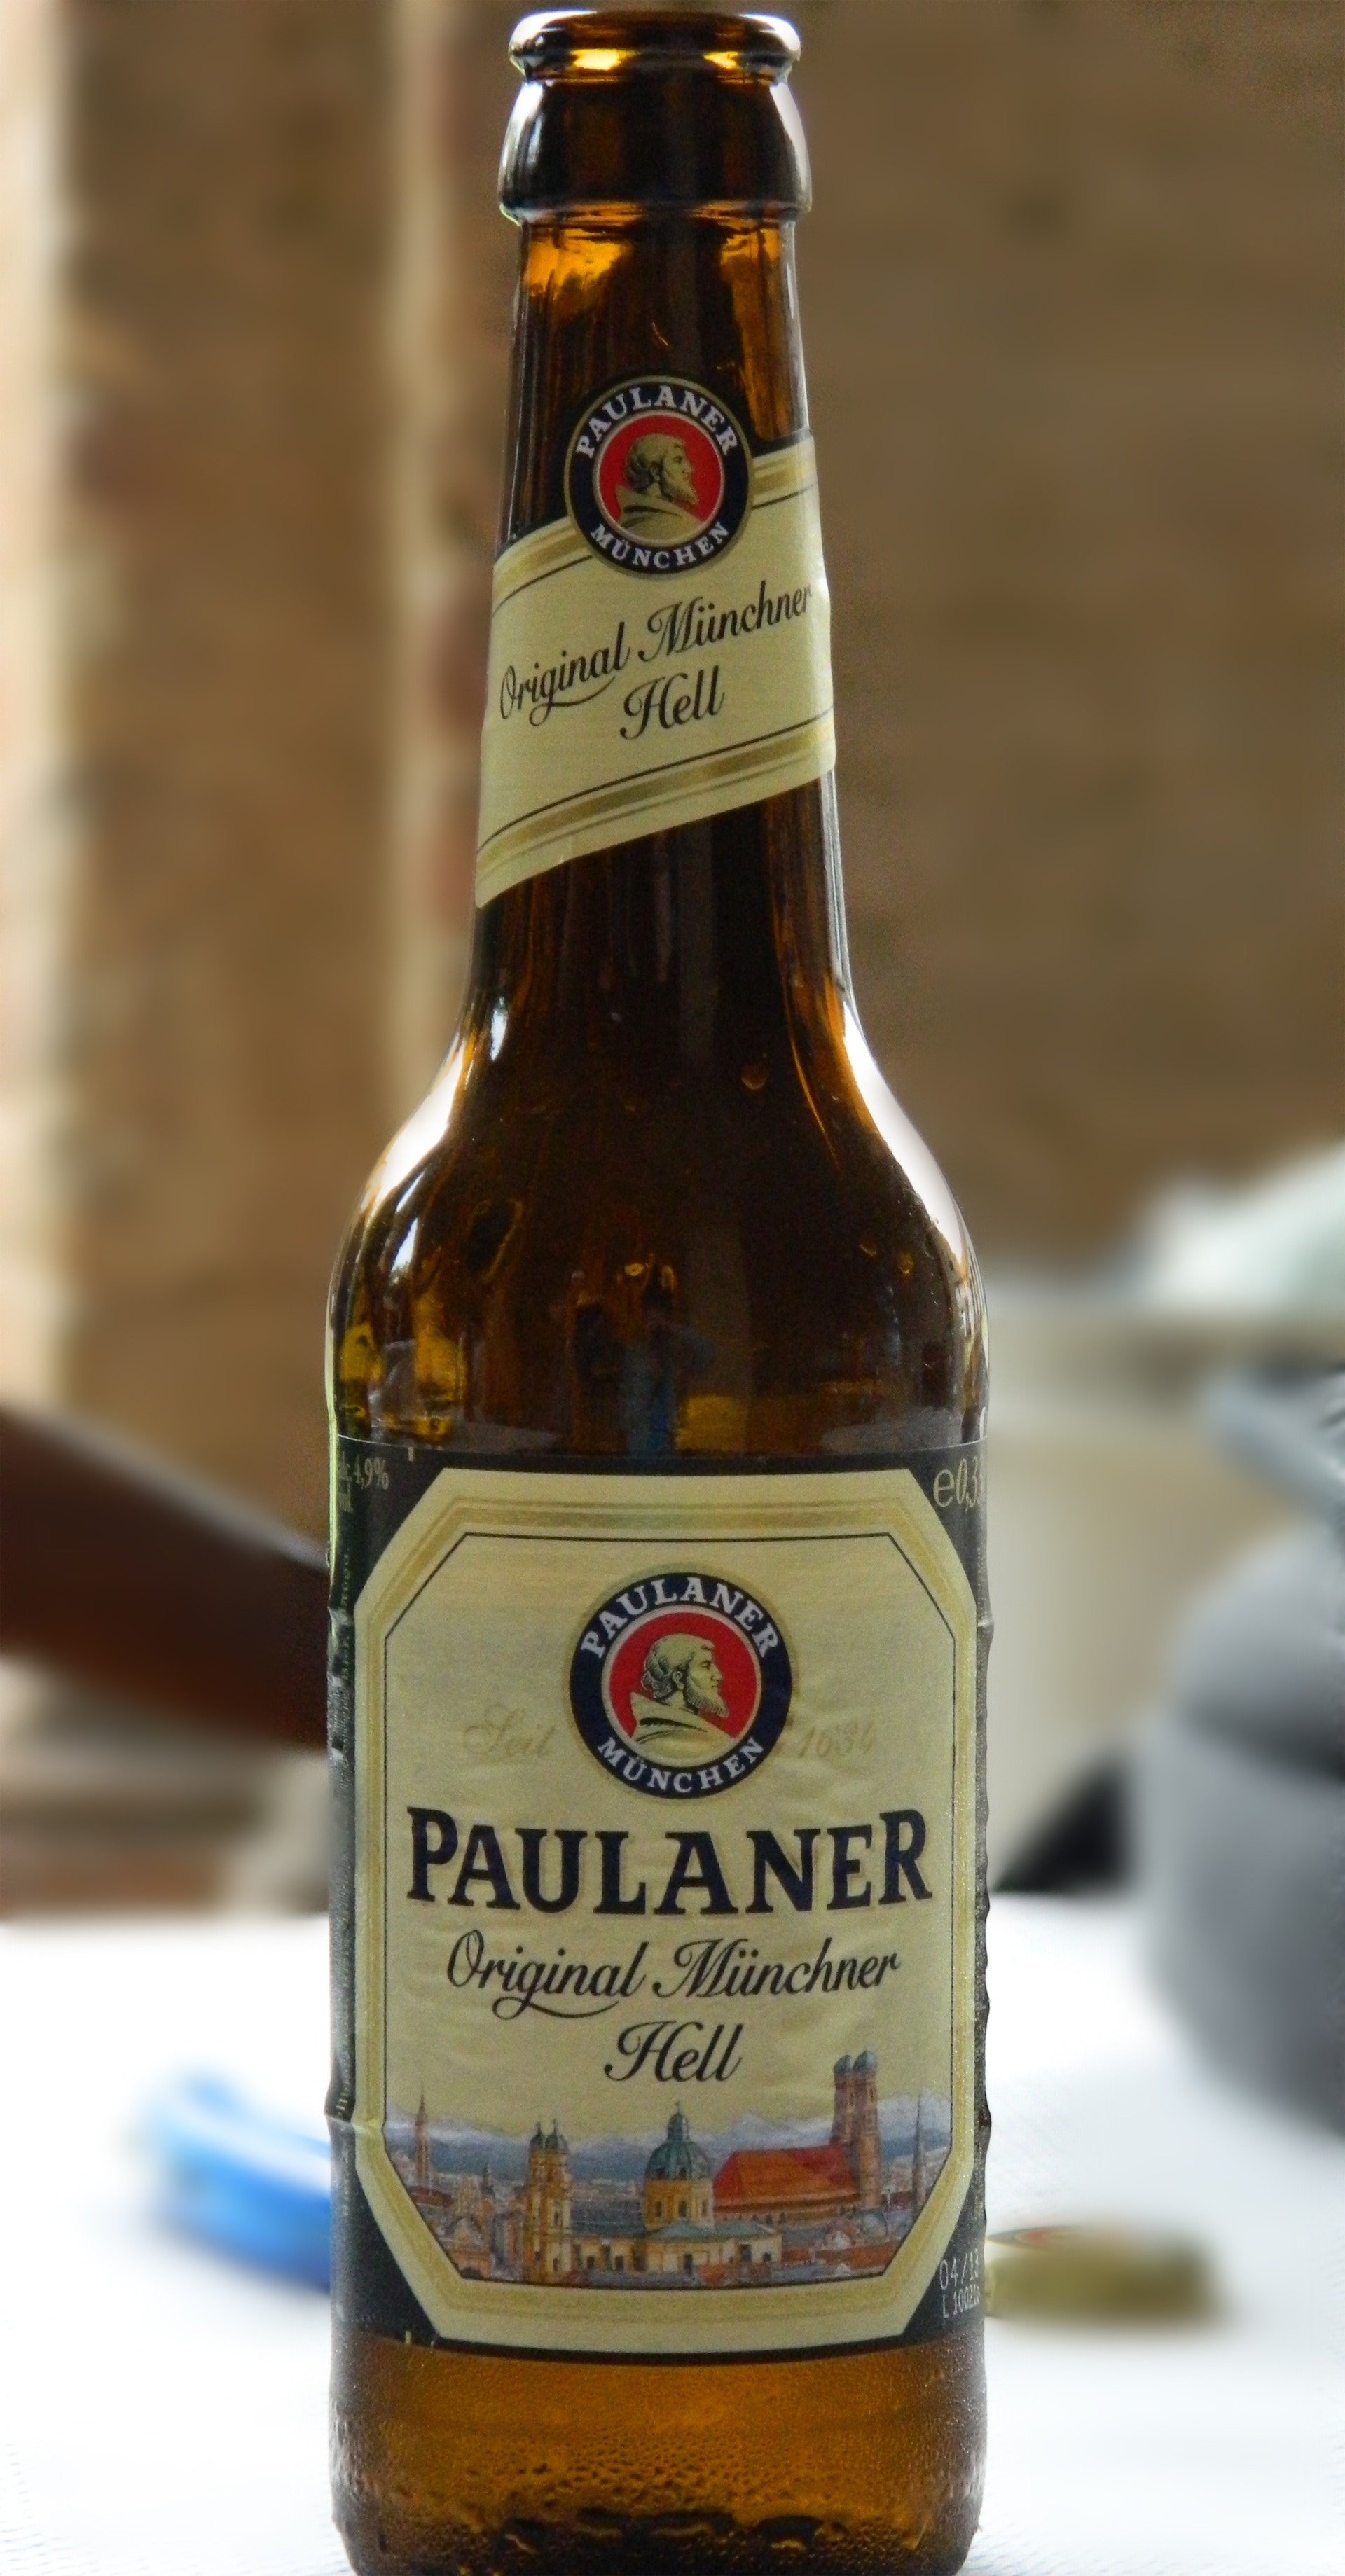 Paulaner original Miinchner Hell wine bottle